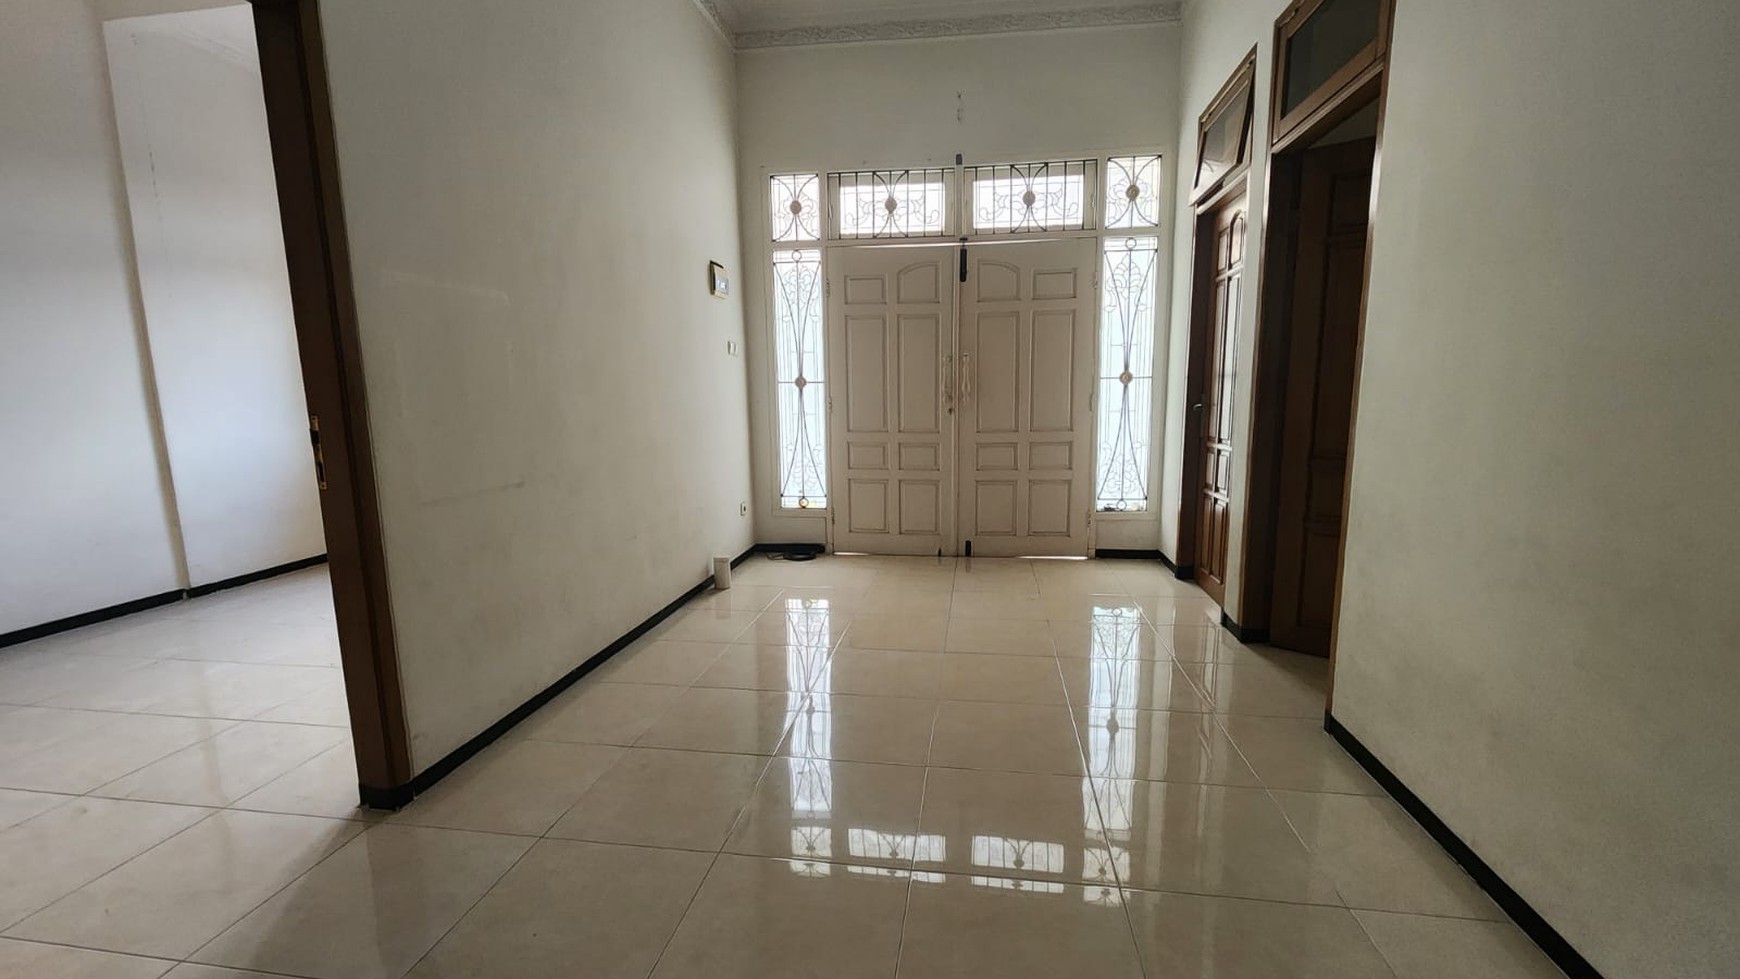 Rumah Disewakan Jalan Simpang Darmo Permai Selatan Surabaya Non Furnish